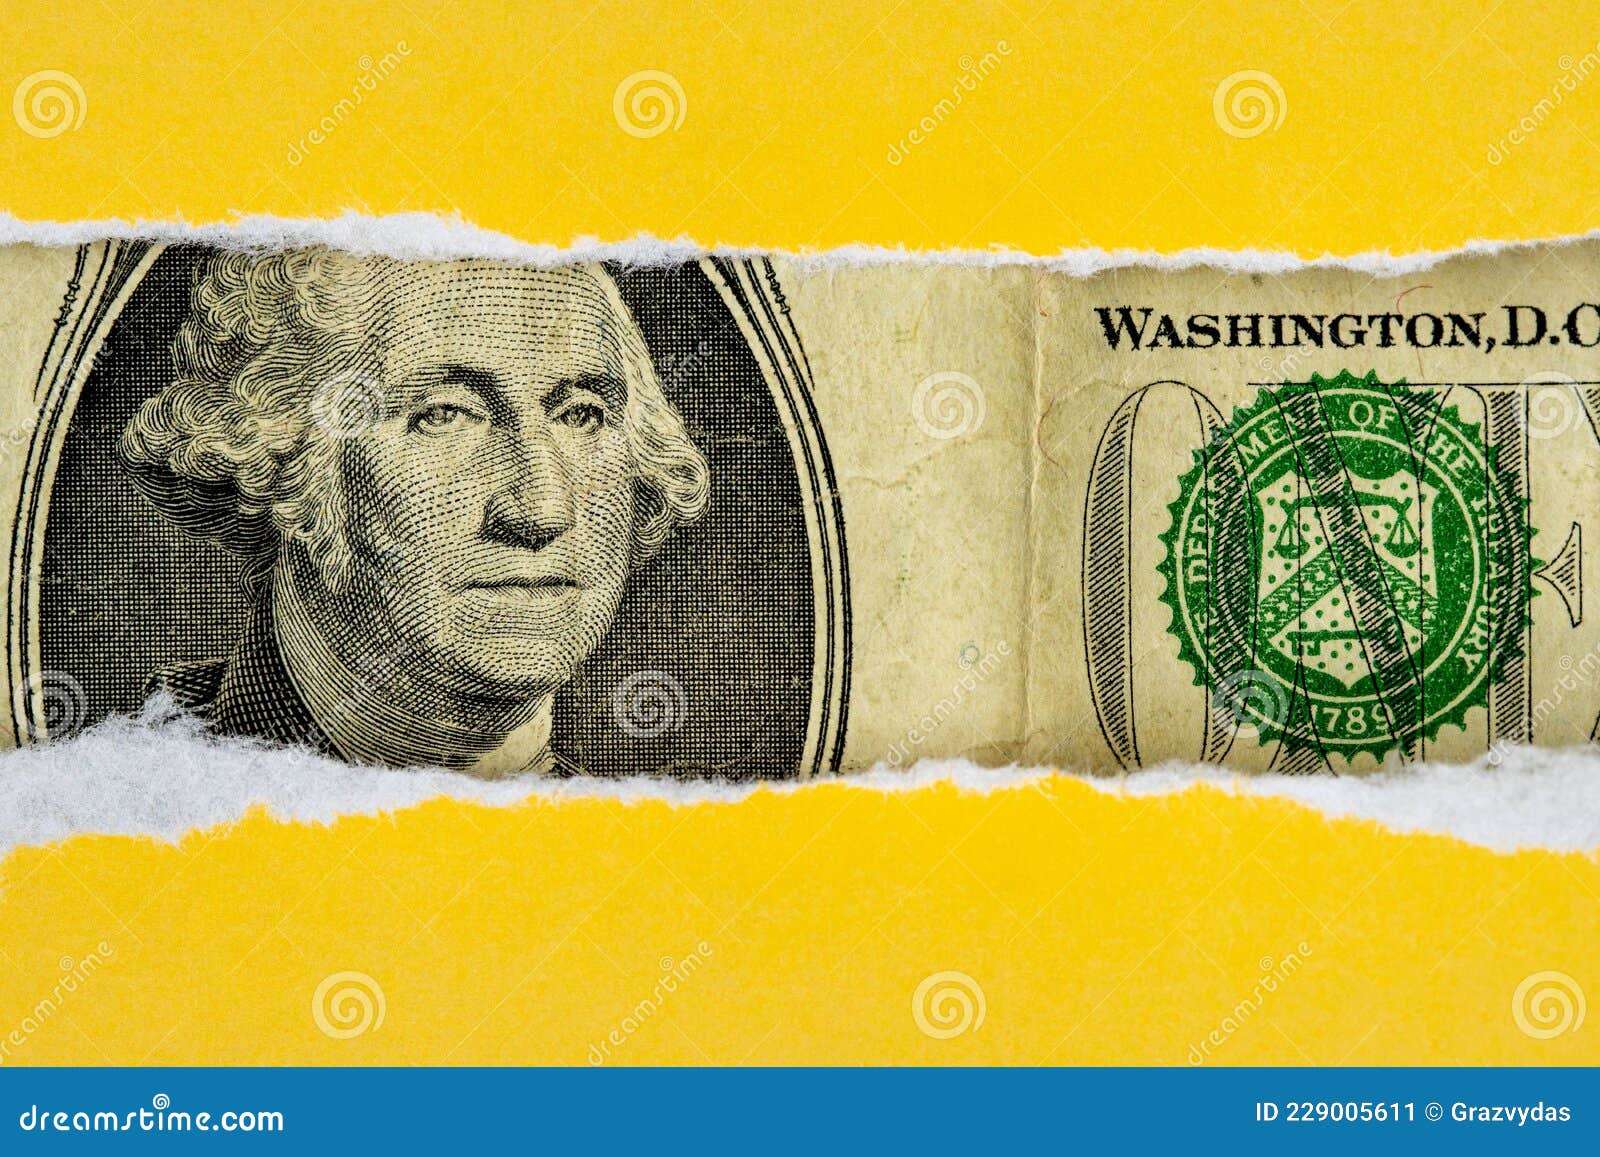 US Dollar Peeking through Torn Yellow Paper Stock Image Image of